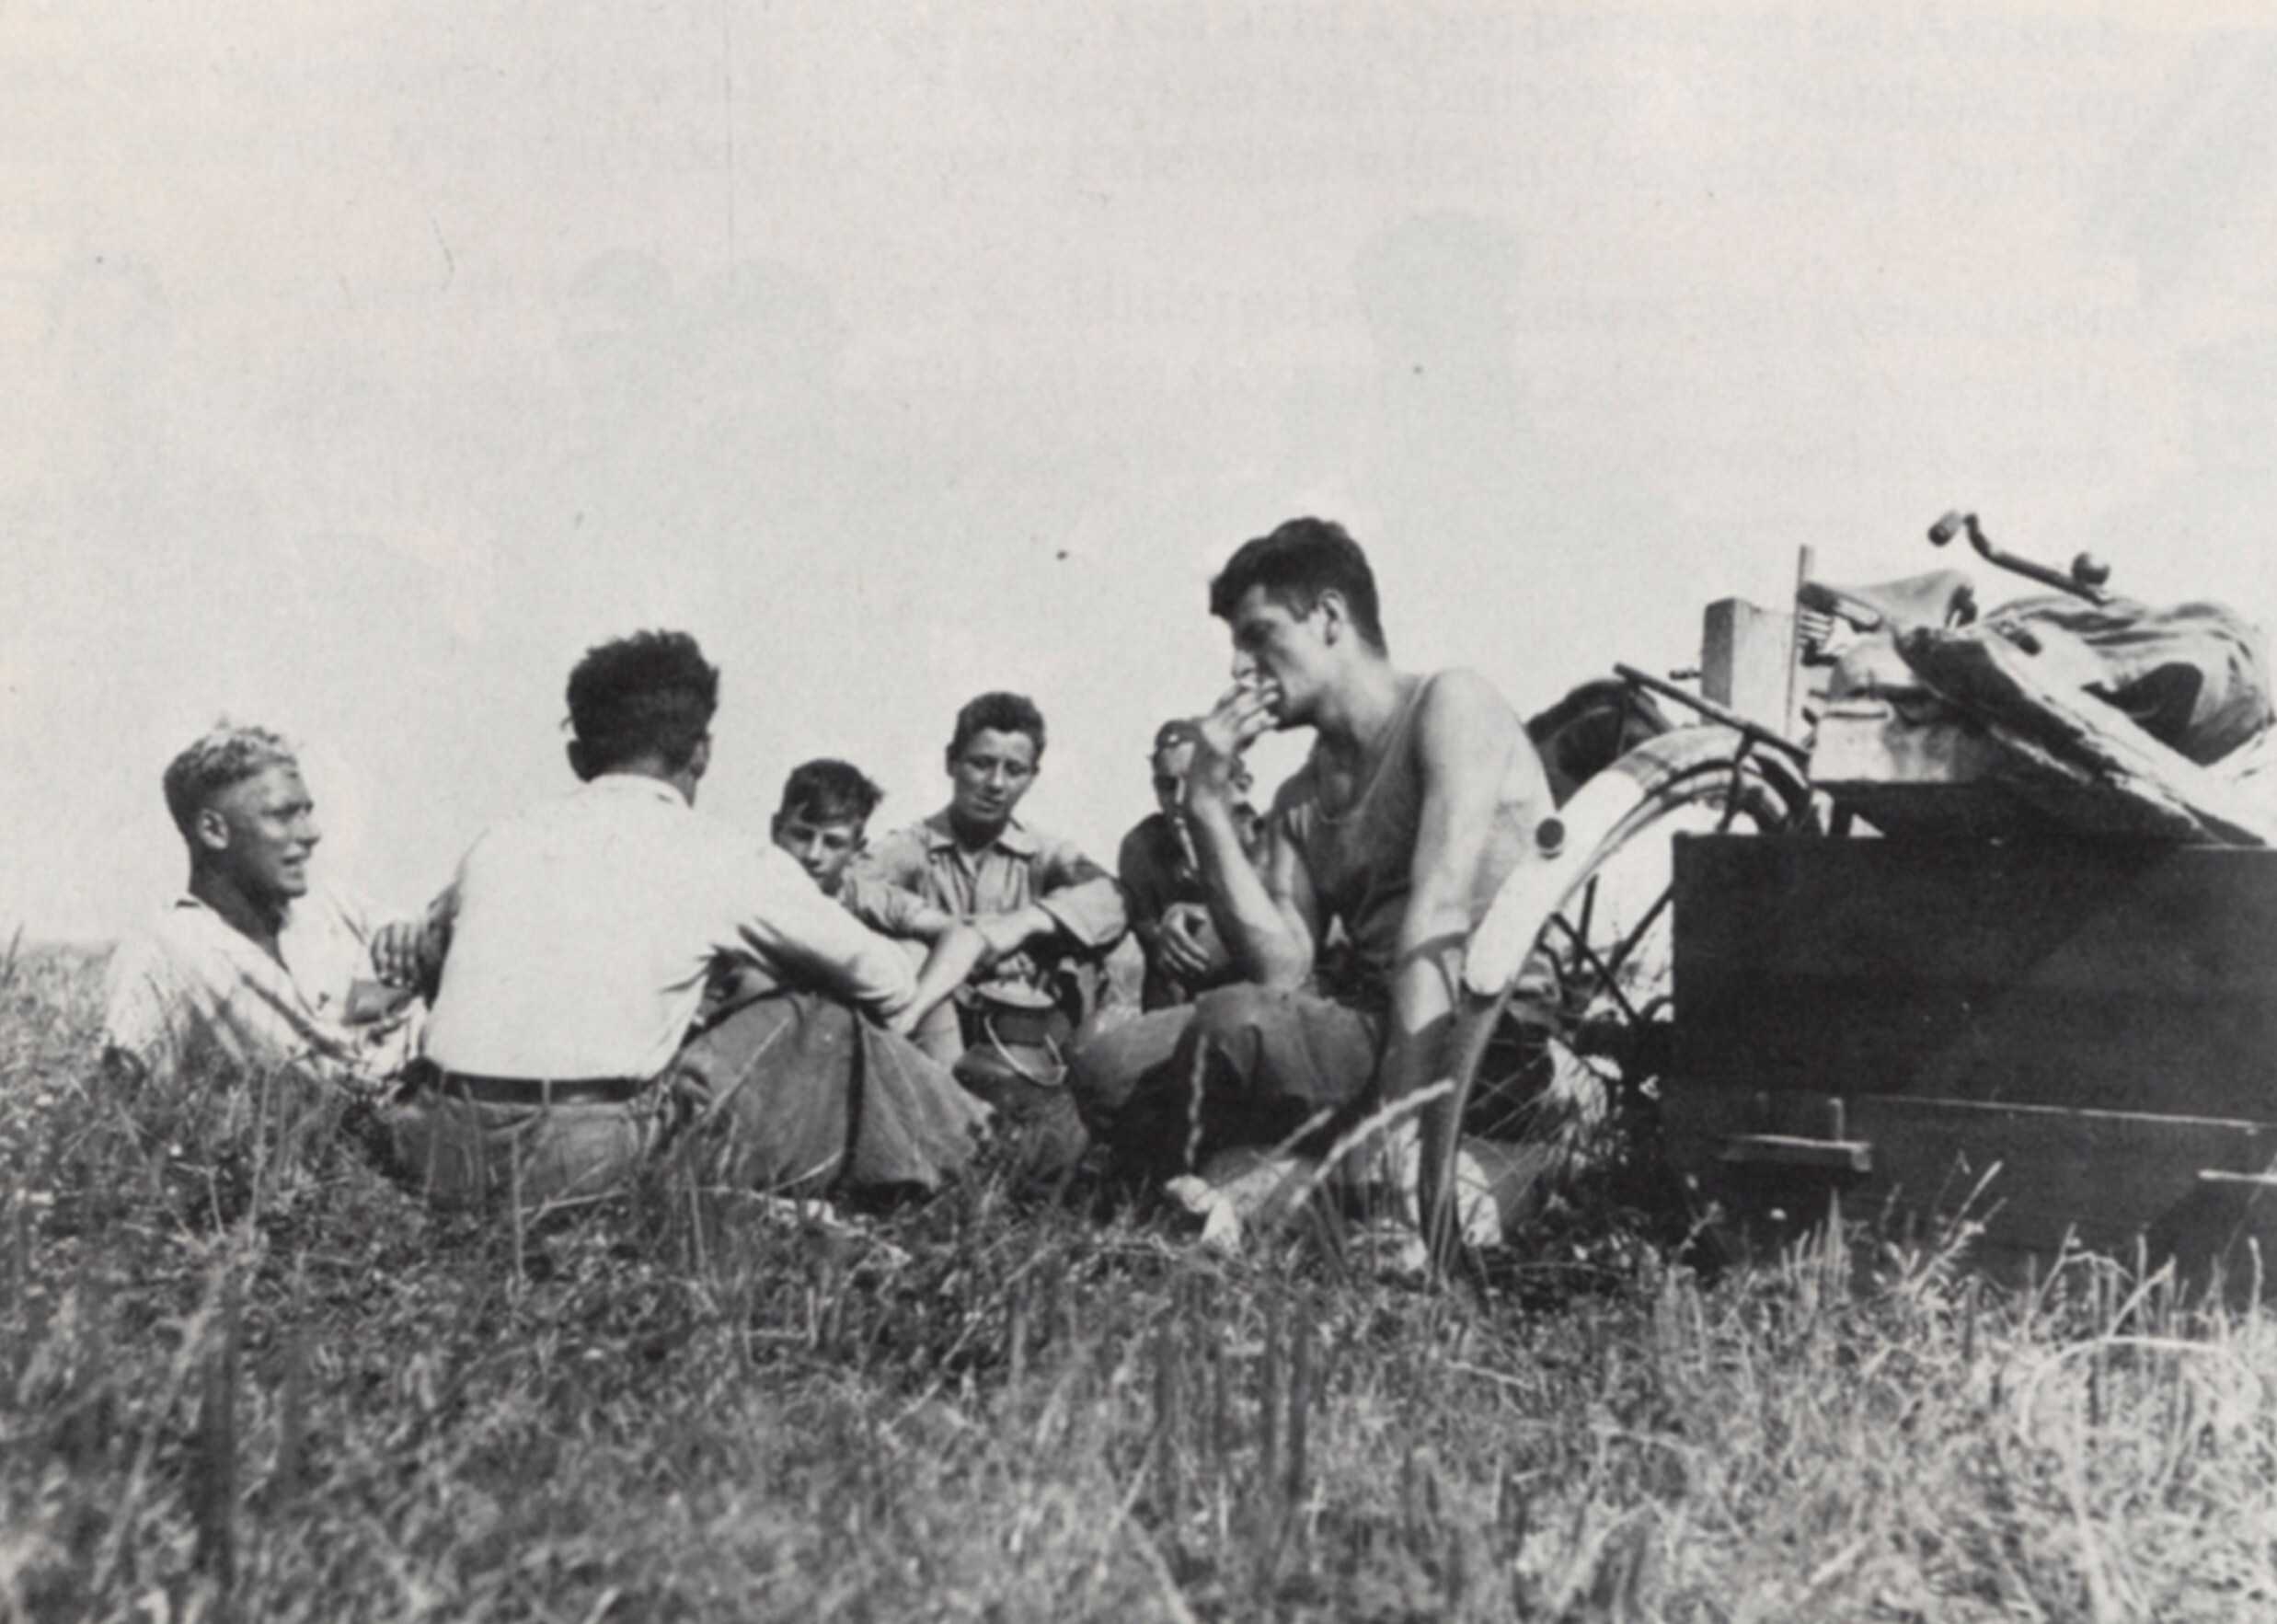 Еврейская молодежь отдыхает от работы на ферме, Werkdorp Nieuwesluis, Вирингермеер, Нидерланды, ок. 1938 г. Фотограф Роман Вишняк